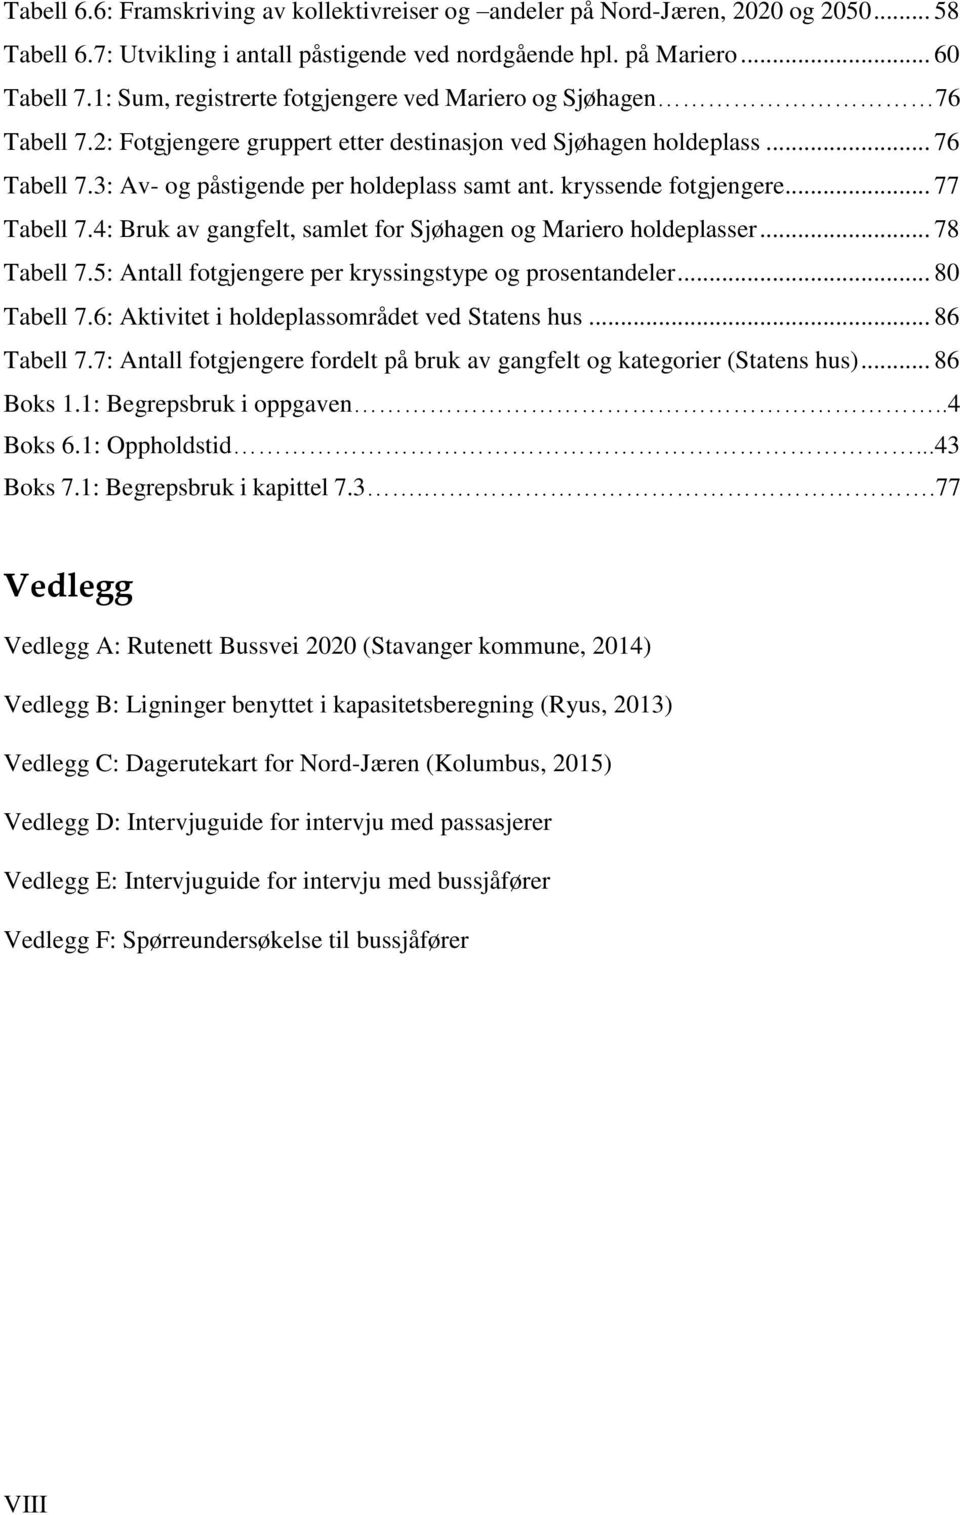 kryssende fotgjengere... 77 Tabell 7.4: Bruk av gangfelt, samlet for Sjøhagen og Mariero holdeplasser... 78 Tabell 7.5: Antall fotgjengere per kryssingstype og prosentandeler... 80 Tabell 7.